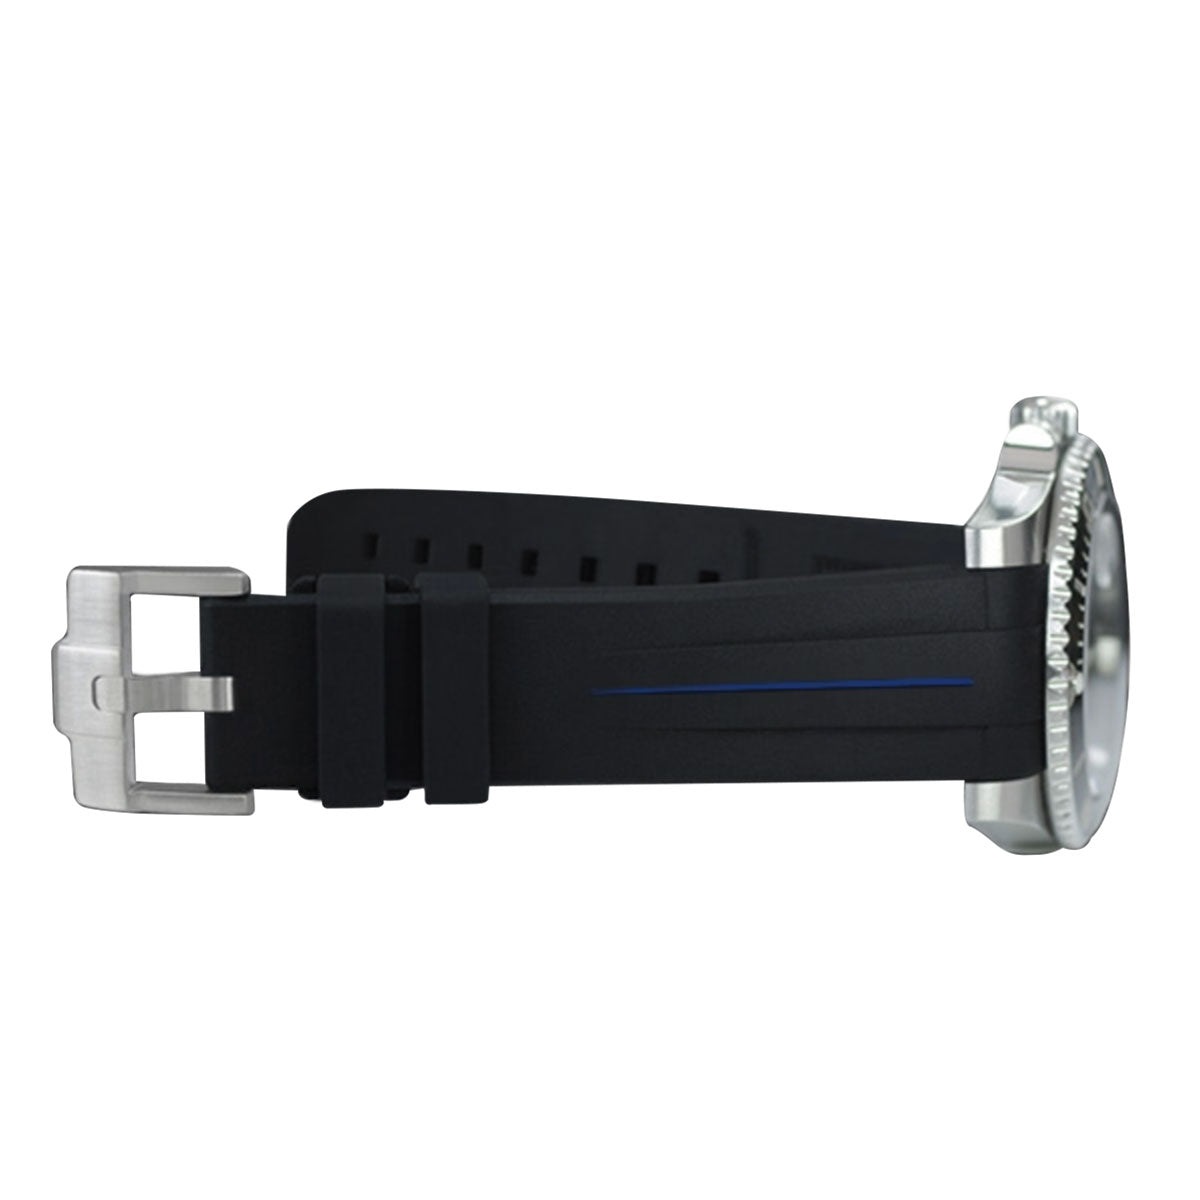 Rolex - Rubber B - Bracelet caoutchouc pour Sea-Dweller - Série boucle ardillon - watch band leather strap - ABP Concept -